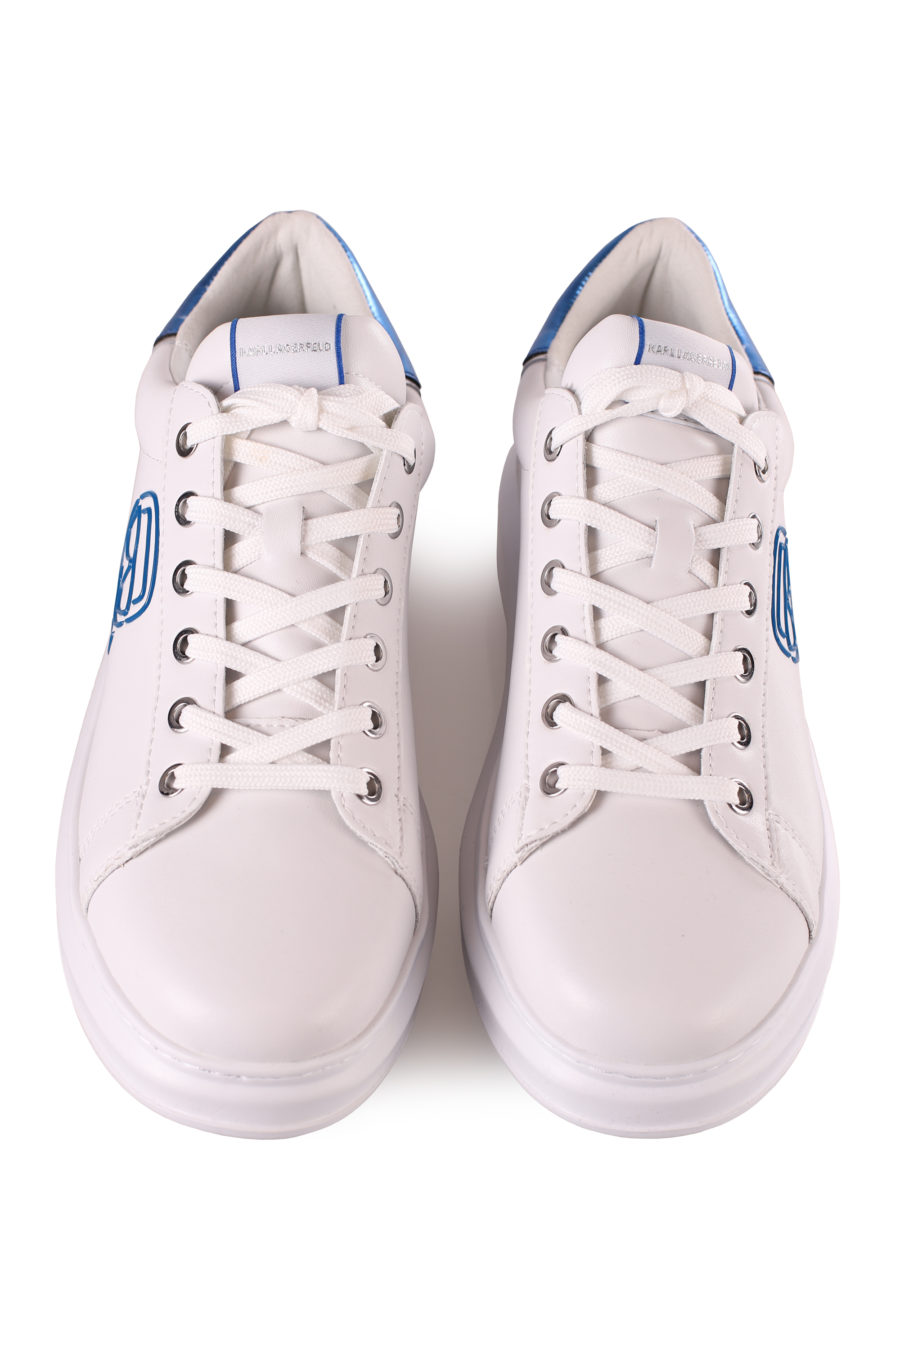 Zapatillas blancas "Kapri" detalle azul - IMG 4587 2